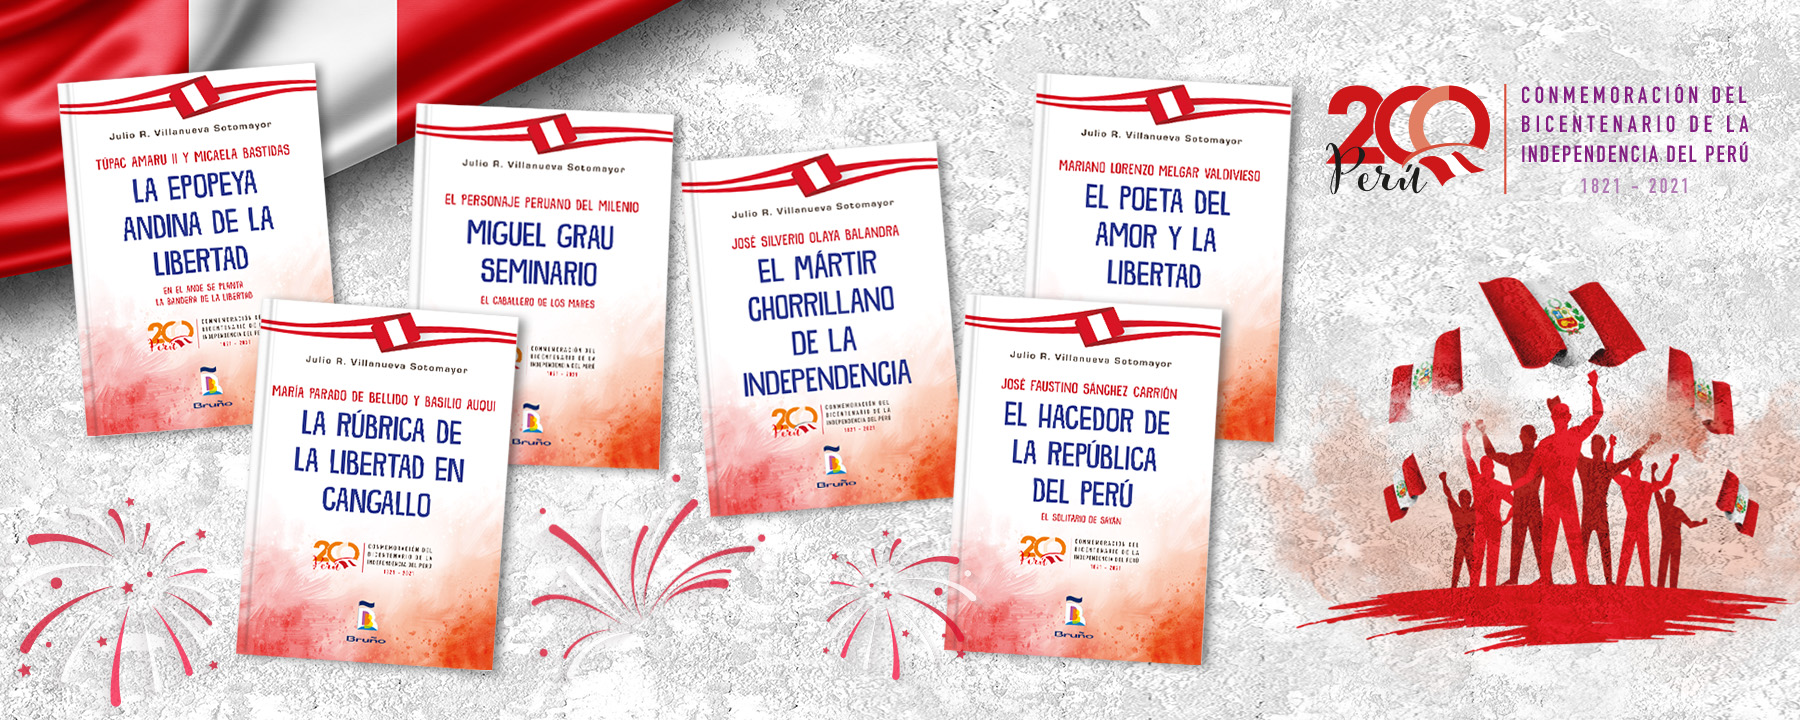 Libros conmemorando el bicentenario de la independencia del Perú.